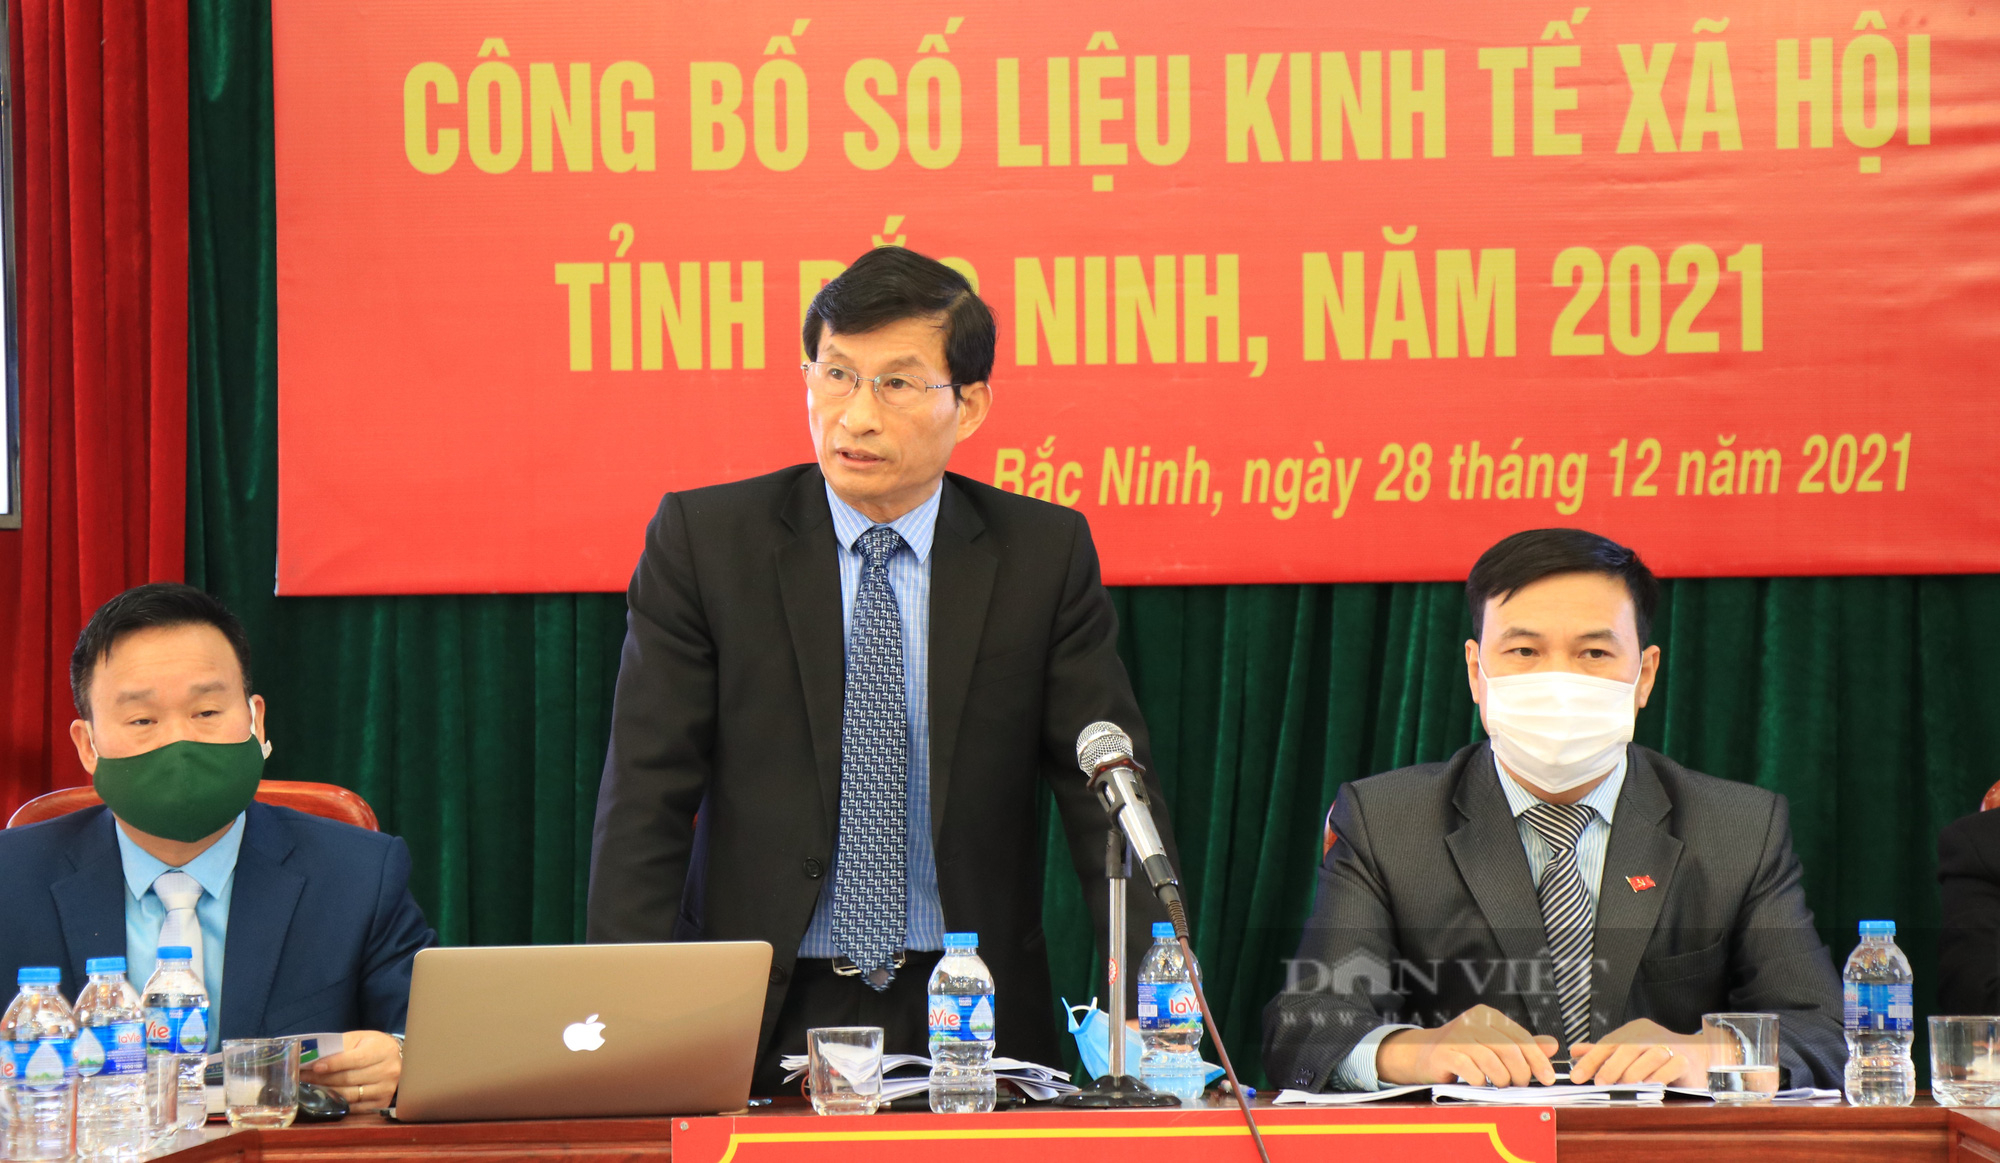 Bắc Ninh dẫn đầu cả nước về sản xuất công nghiệp và xuất nhập khẩu - Ảnh 1.